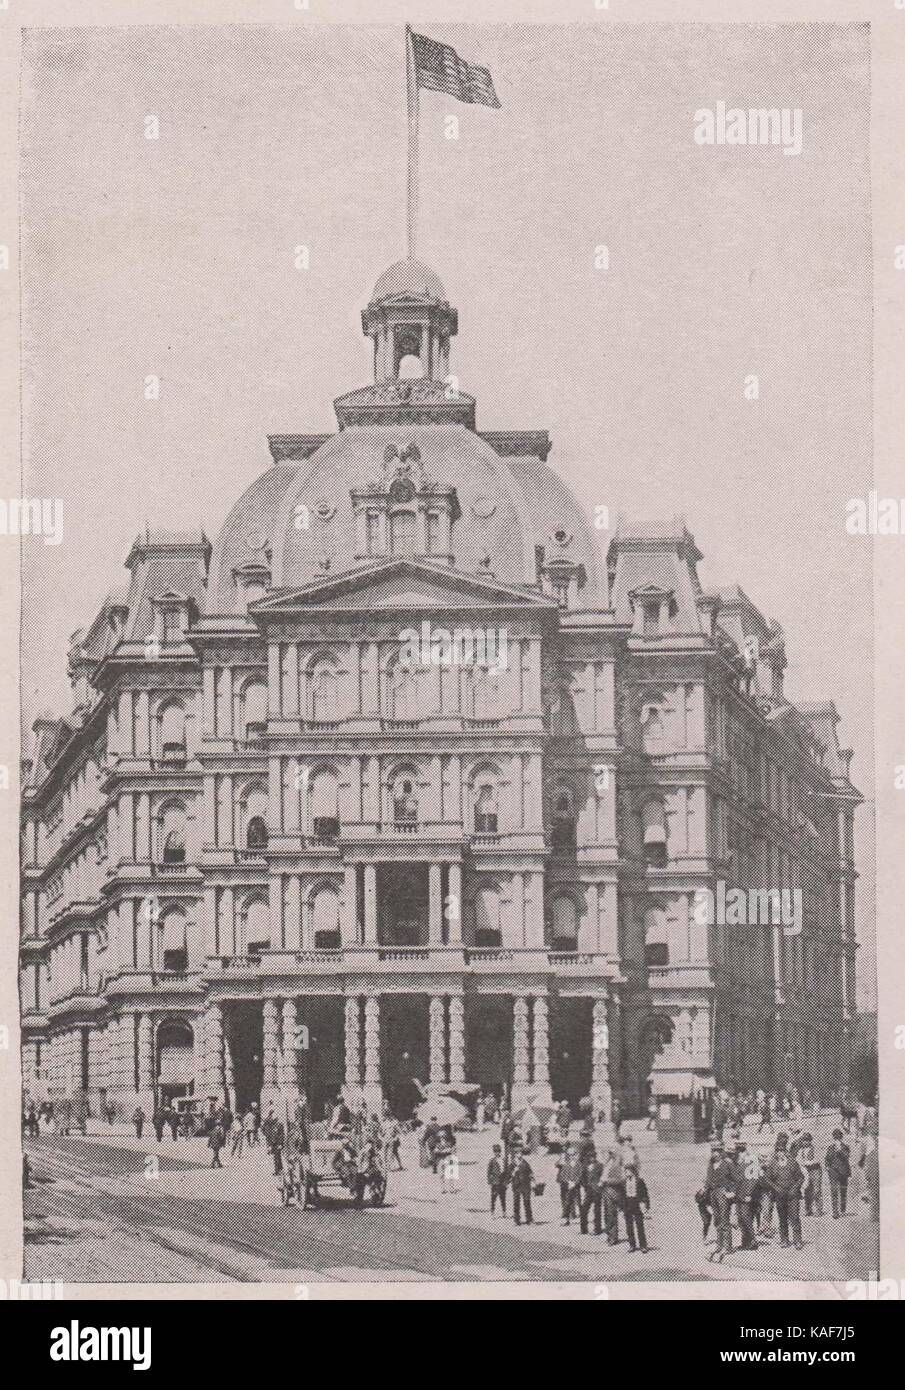 Bureau de poste et Federal Building, Broadway à park row, ouvert en 1875, les recettes annuelles de plus de 30 000 000 $ Banque D'Images